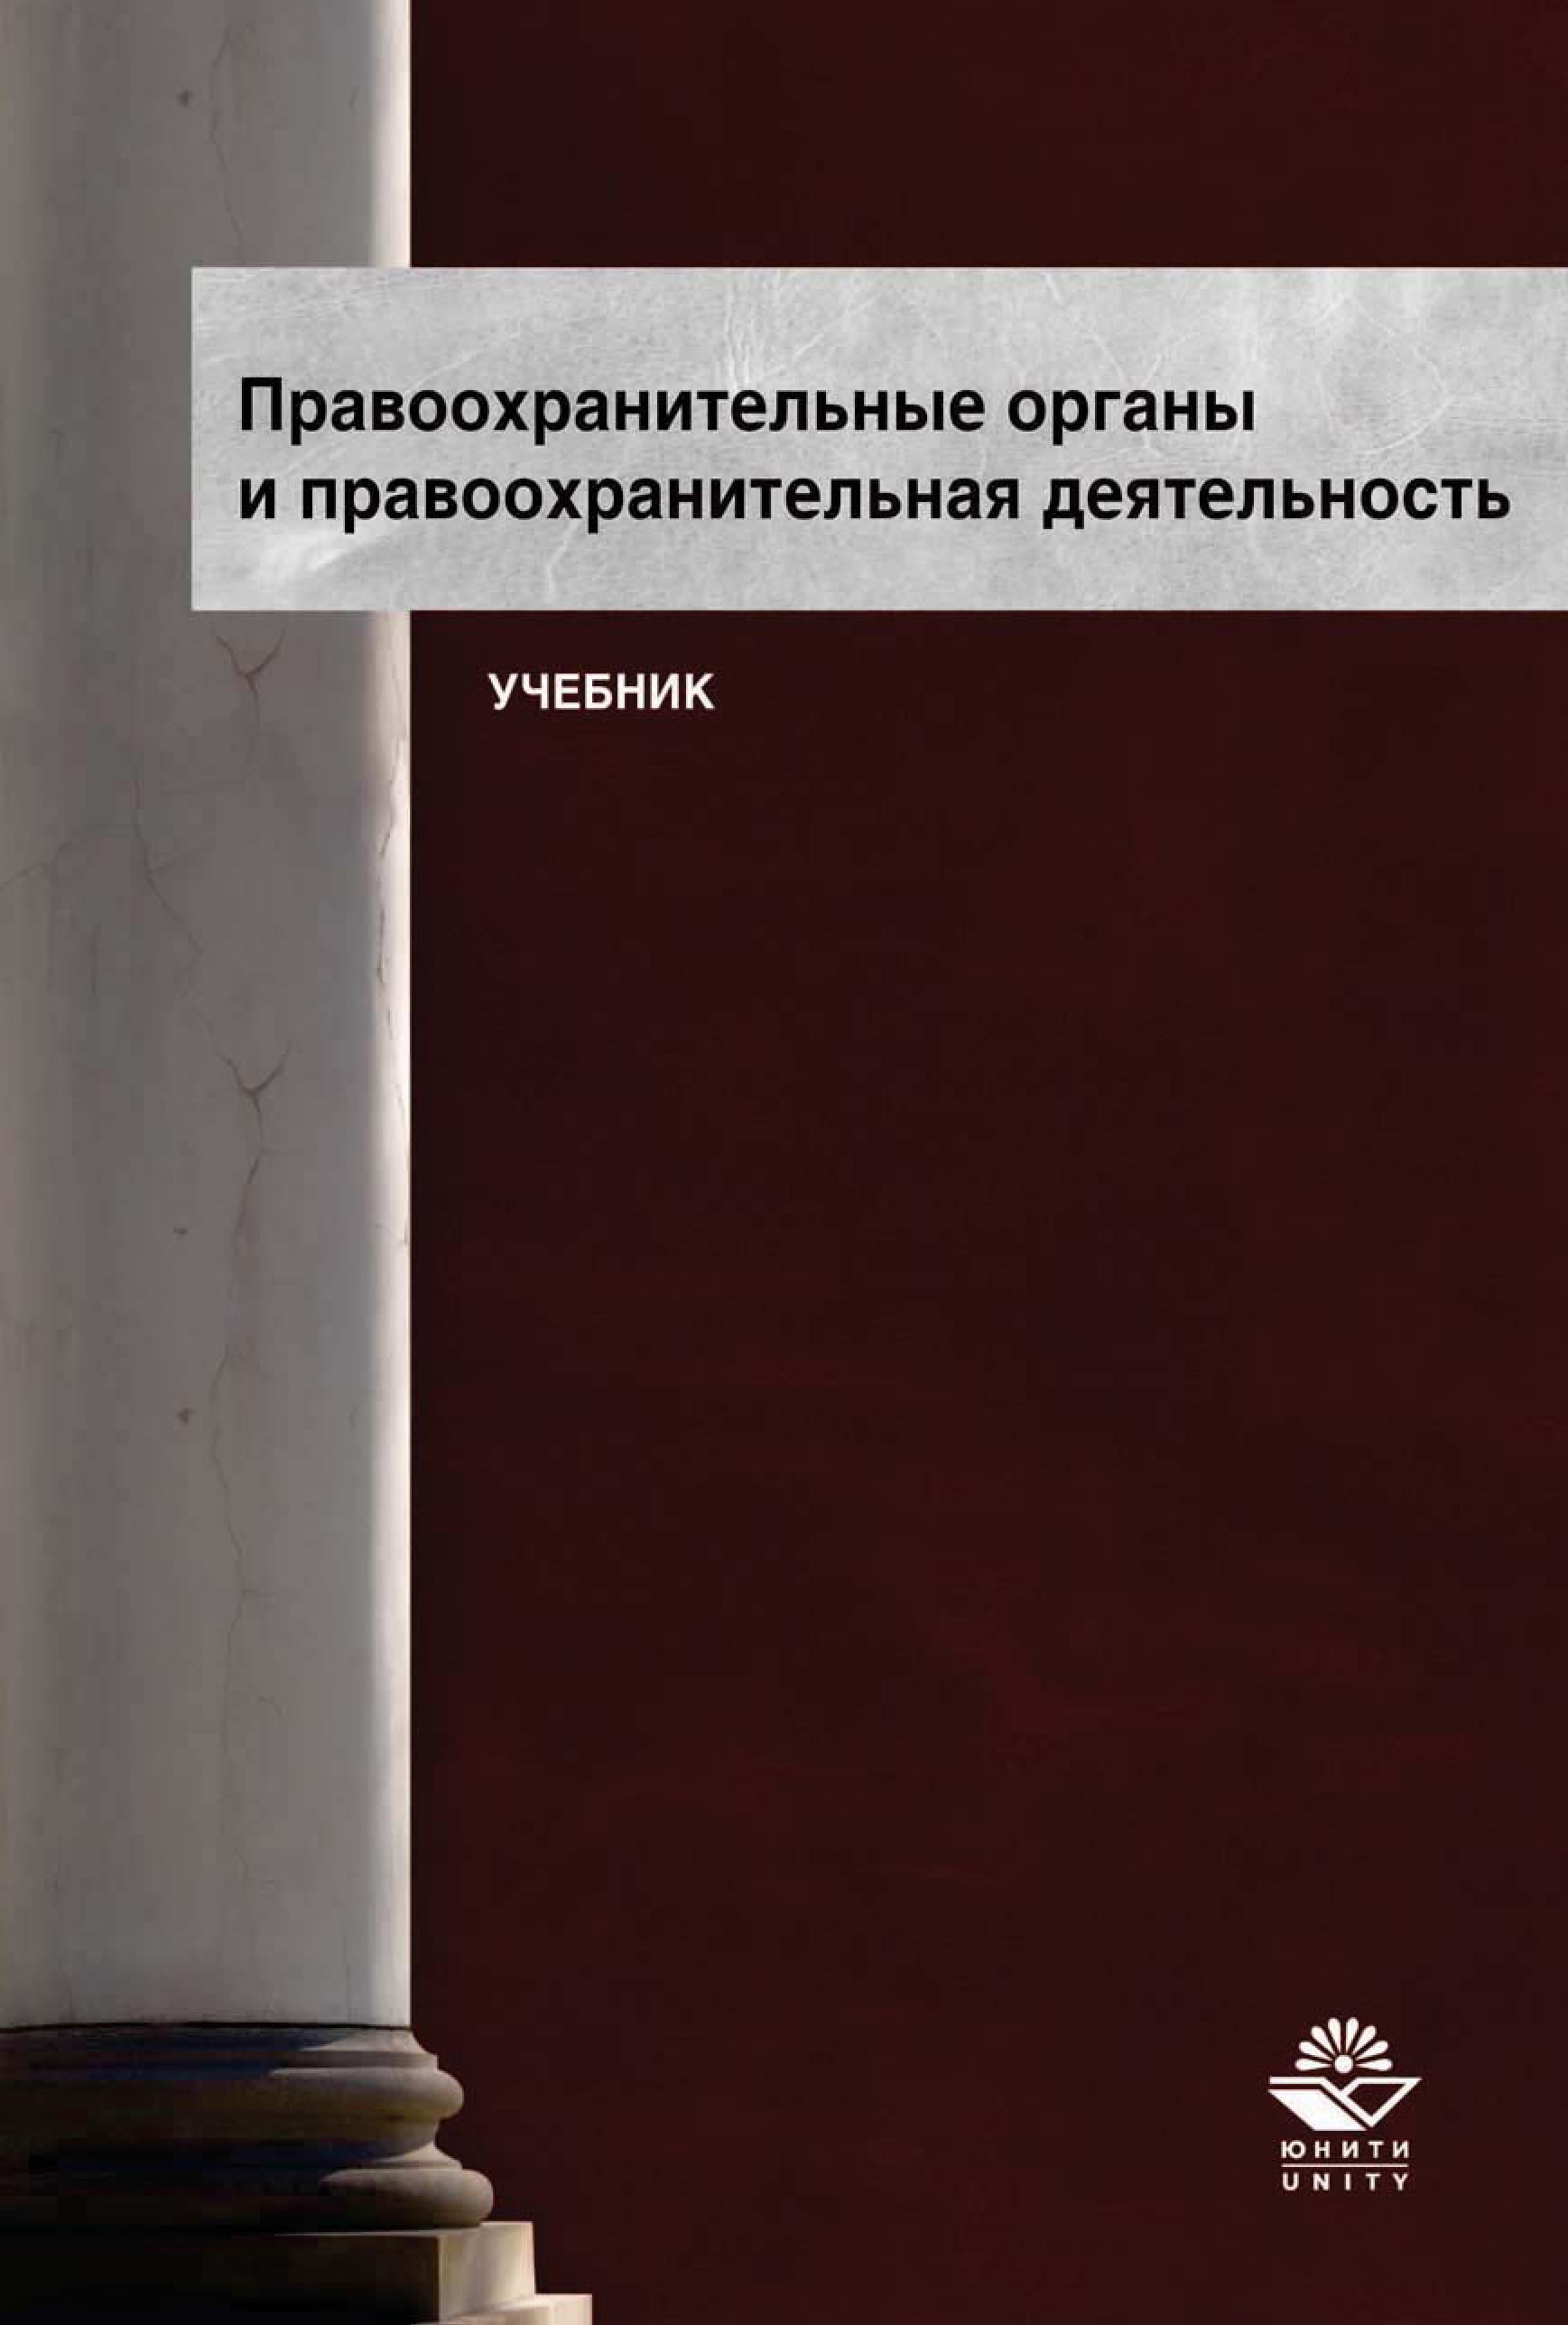 Судебная власть и правоохранительная деятельность в Российской Федерации: учебное пособие